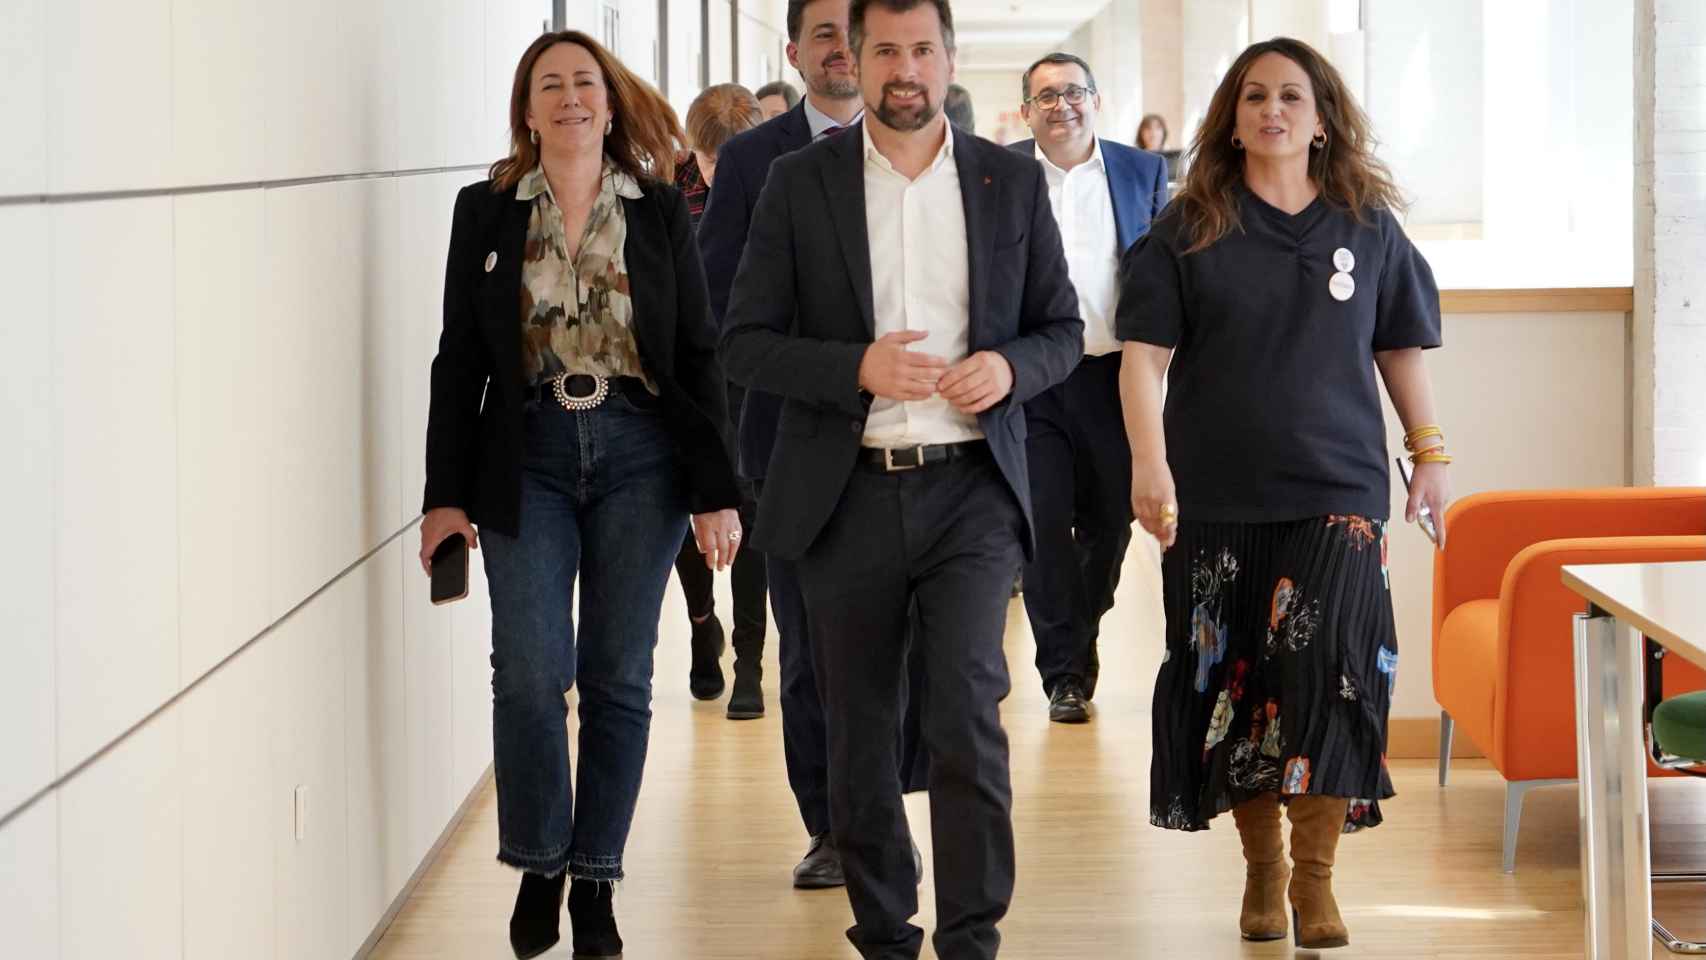 El secretario general del PSOE en Castilla y León, Luis Tudanca, comparece ante los medios para valorar la decisión del presidente del Gobierno